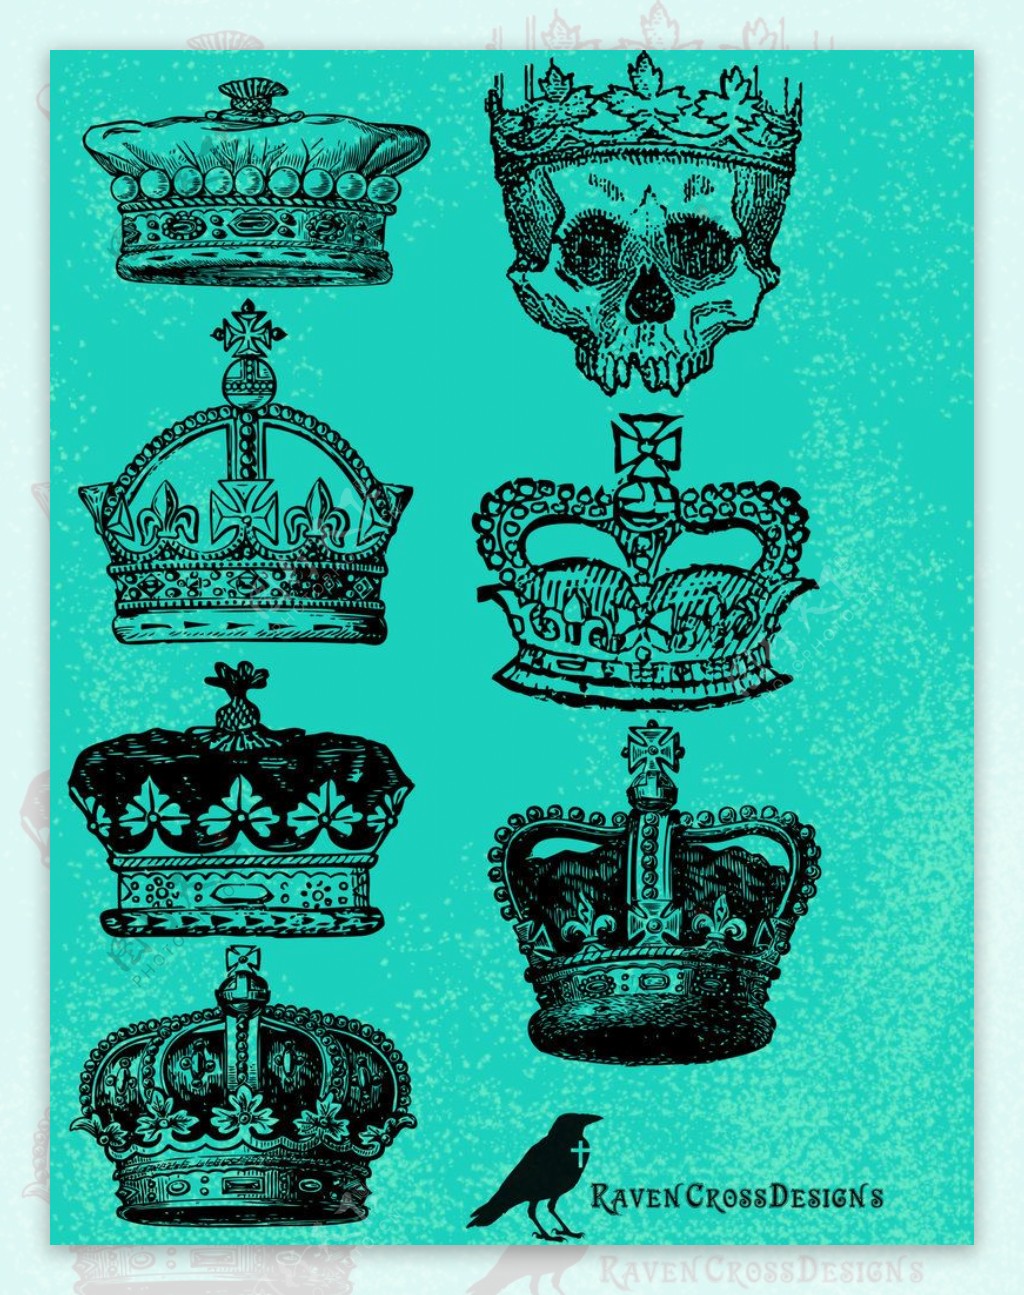 骷髅头王冠皇冠教皇皇冠国王王冠photoshop笔刷素材下载